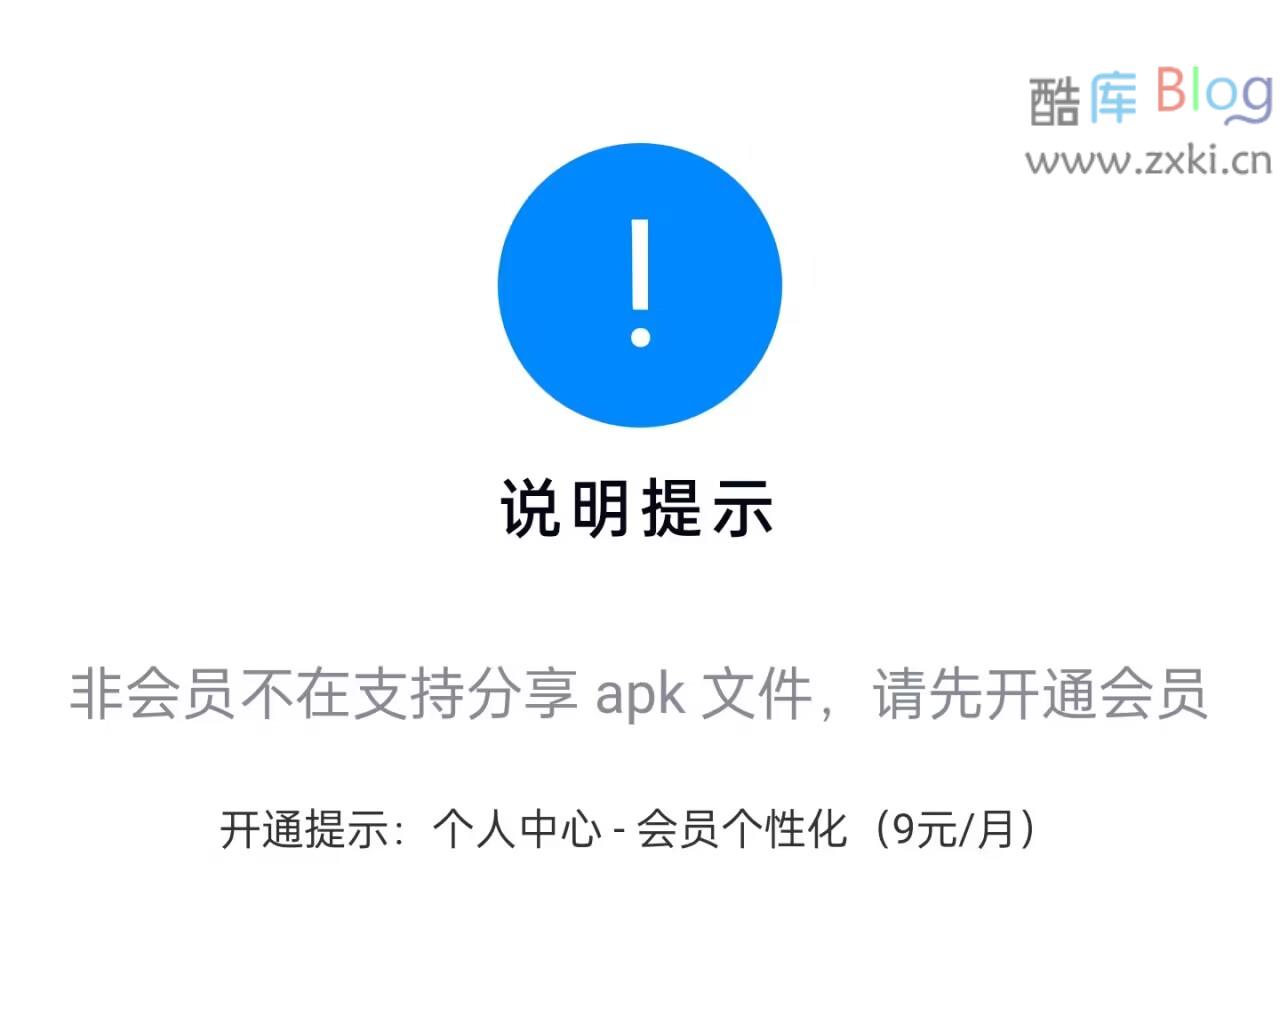 蓝奏云网盘非会员无法分享APK文件，需开通会员个性化服务 第3张插图